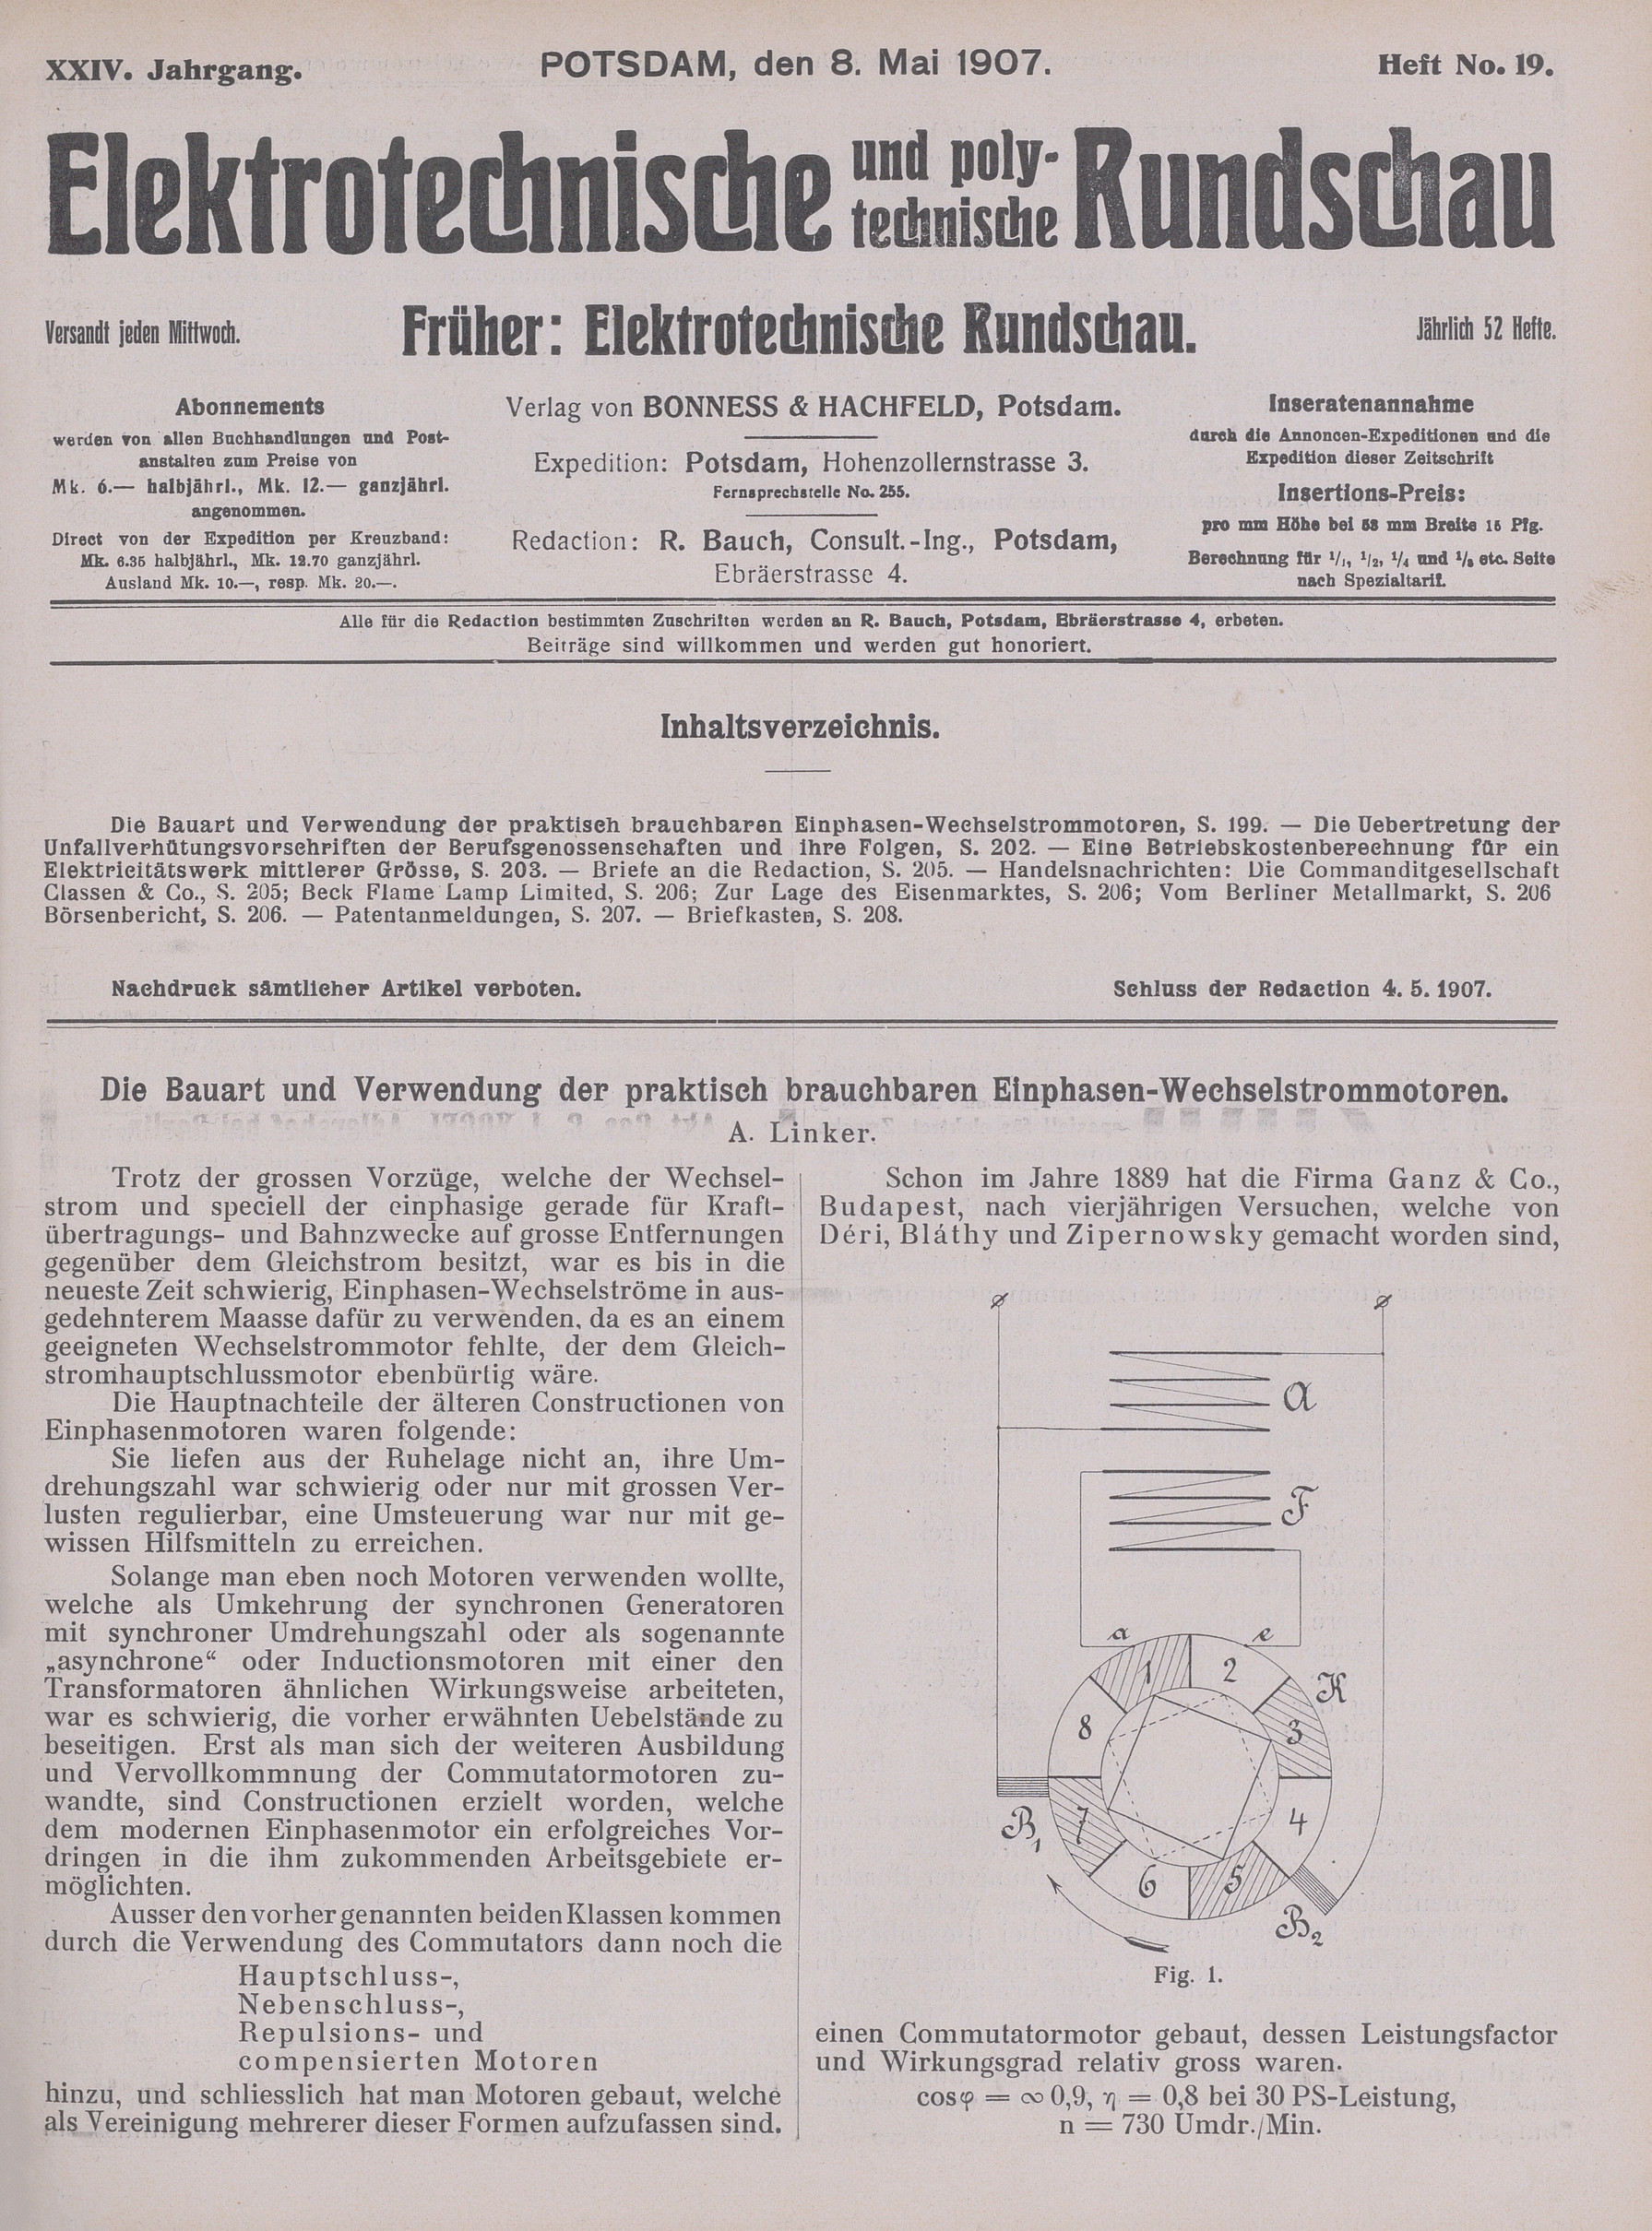 Elektrotechnische und polytechnische Rundschau, XXIV. Jahrgang, Heft No. 19